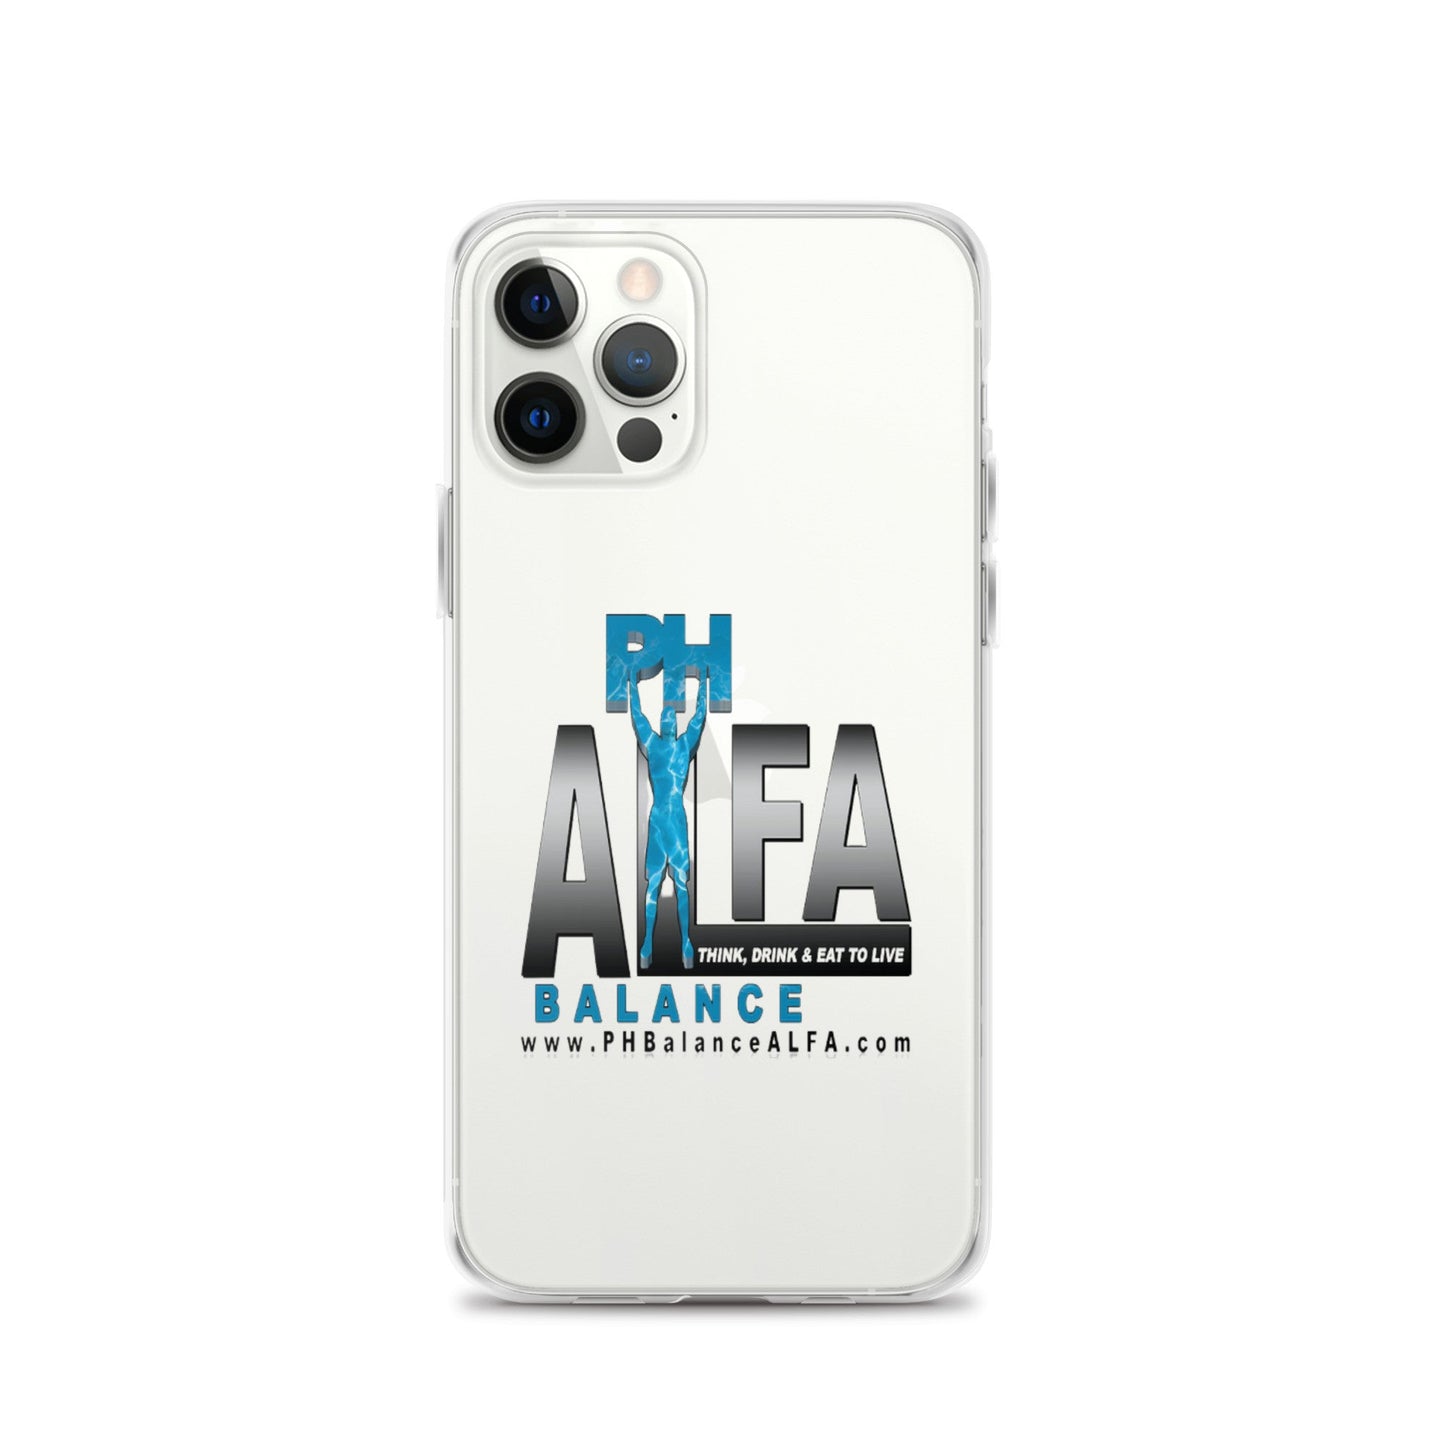 ALFA iPhone Case - ALFA Water